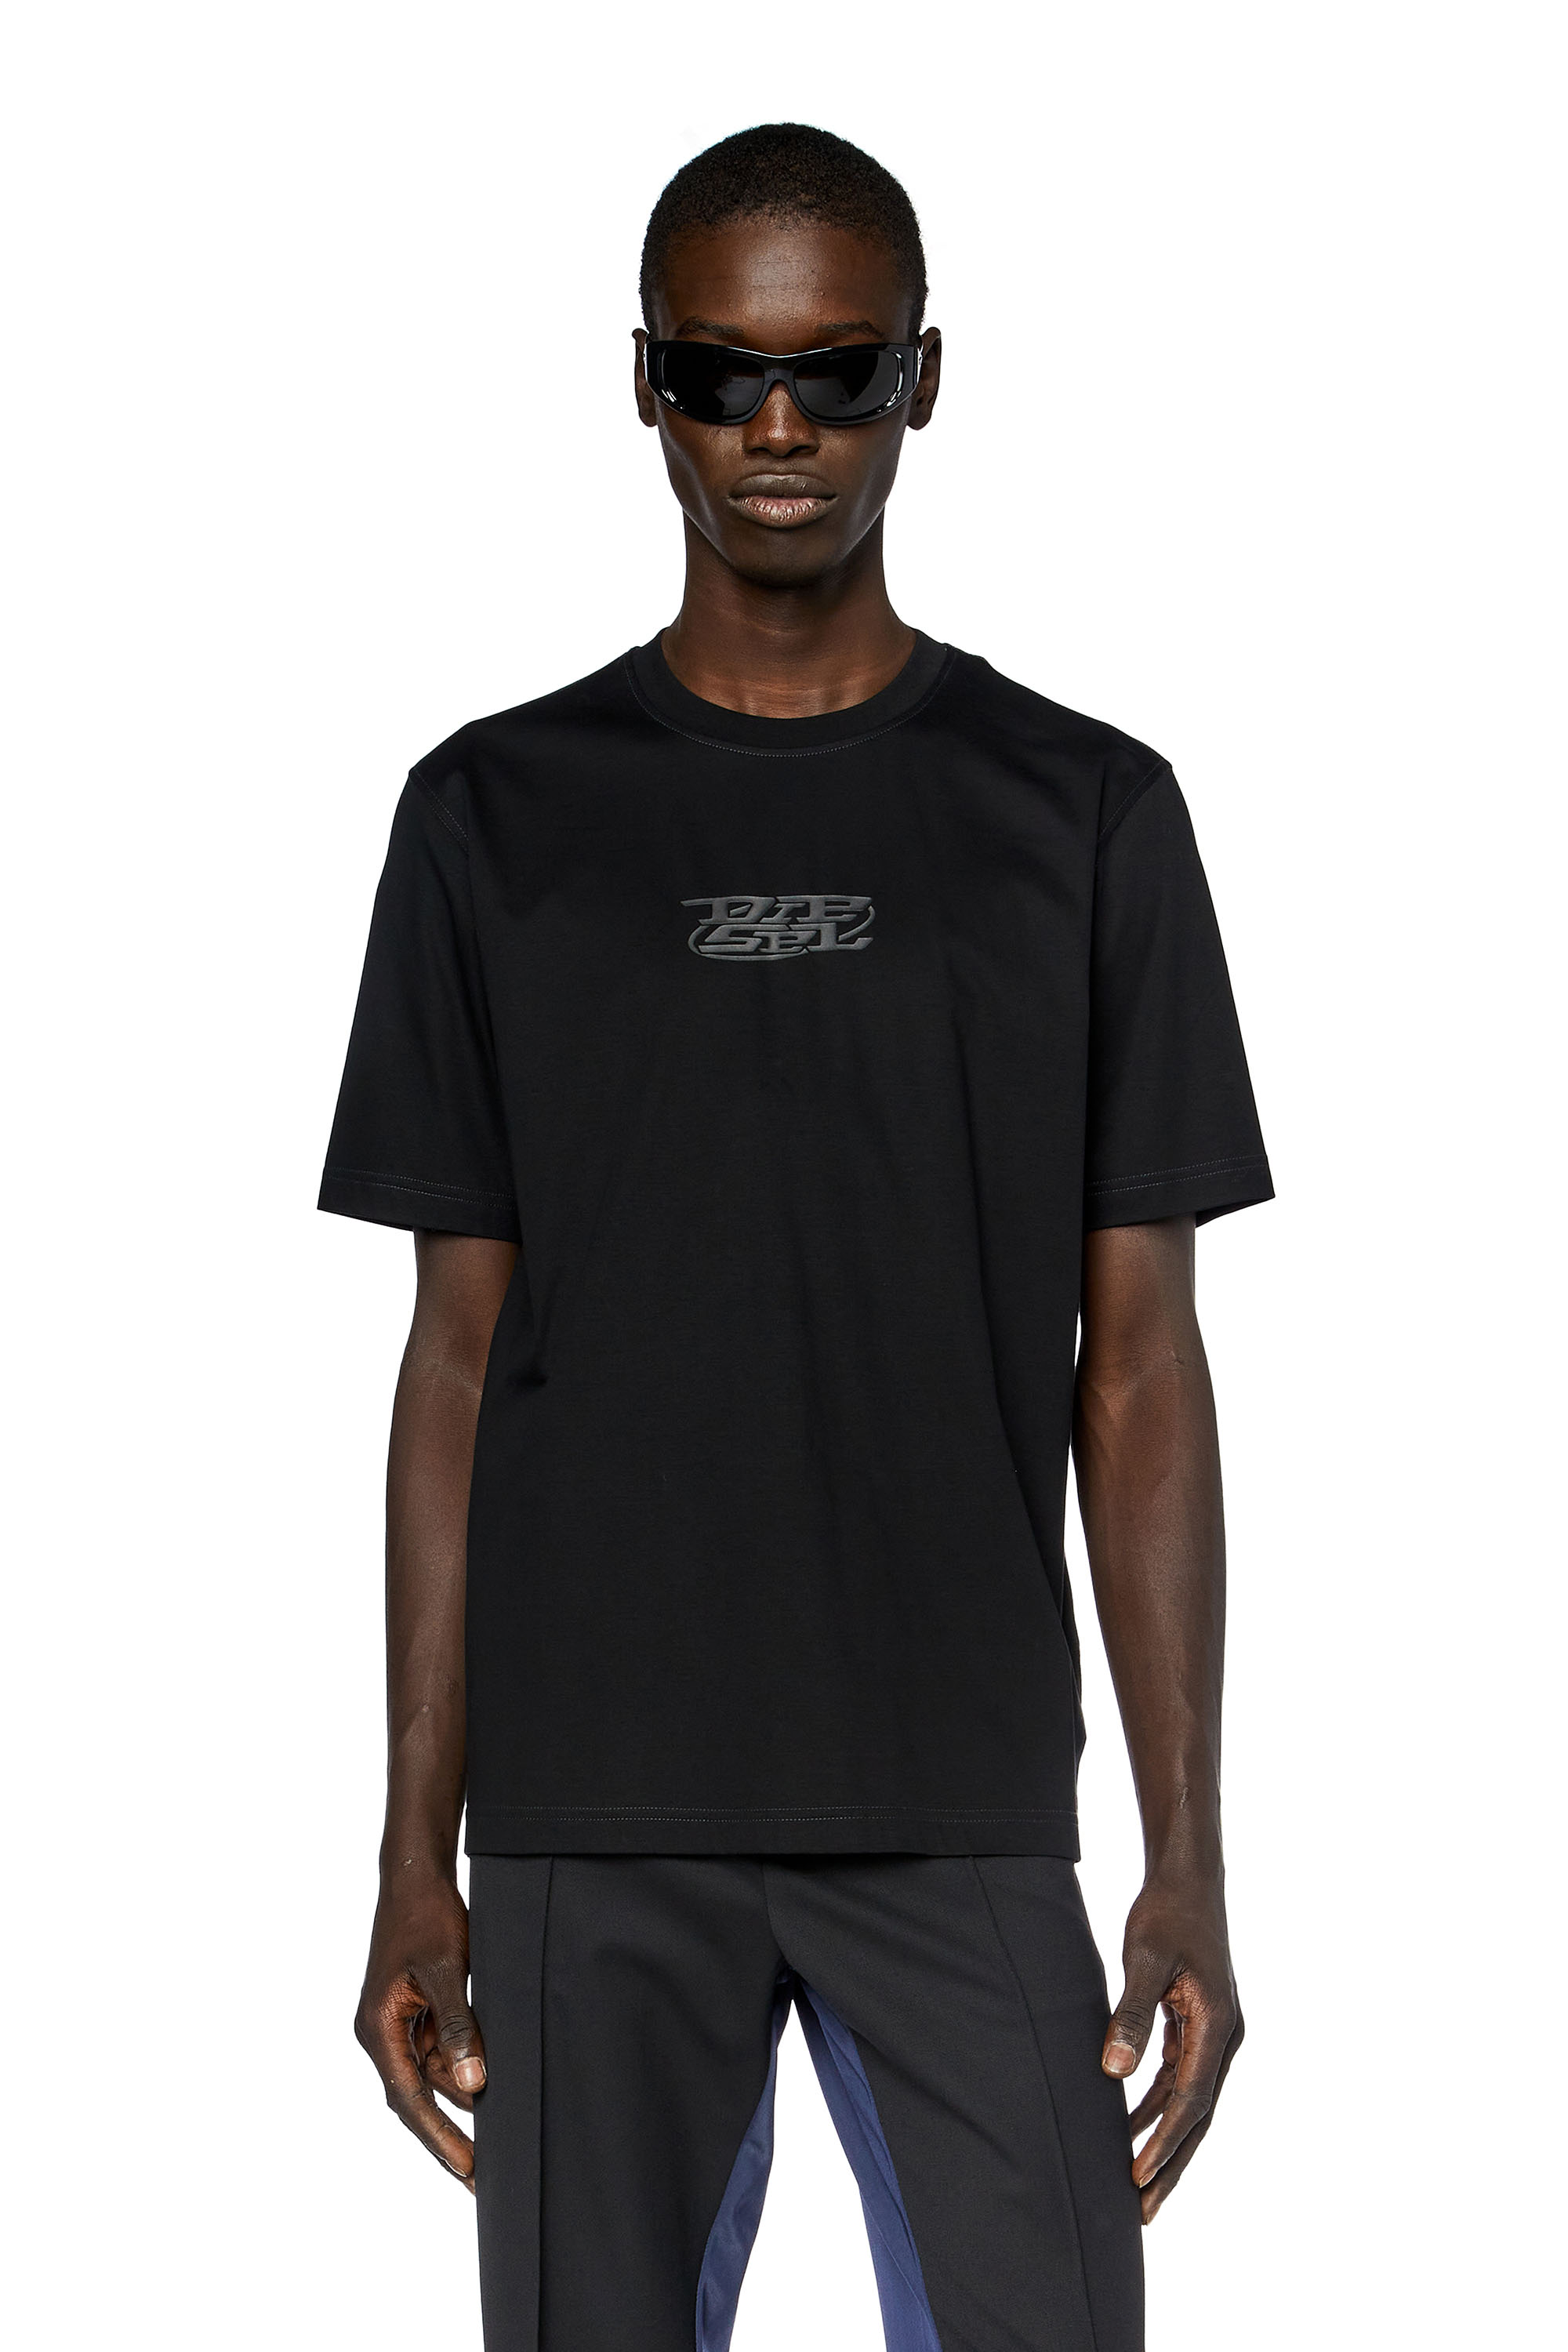 Diesel - Camiseta de algodón mercerizado con logotipo estampado - Camisetas - Hombre - Negro